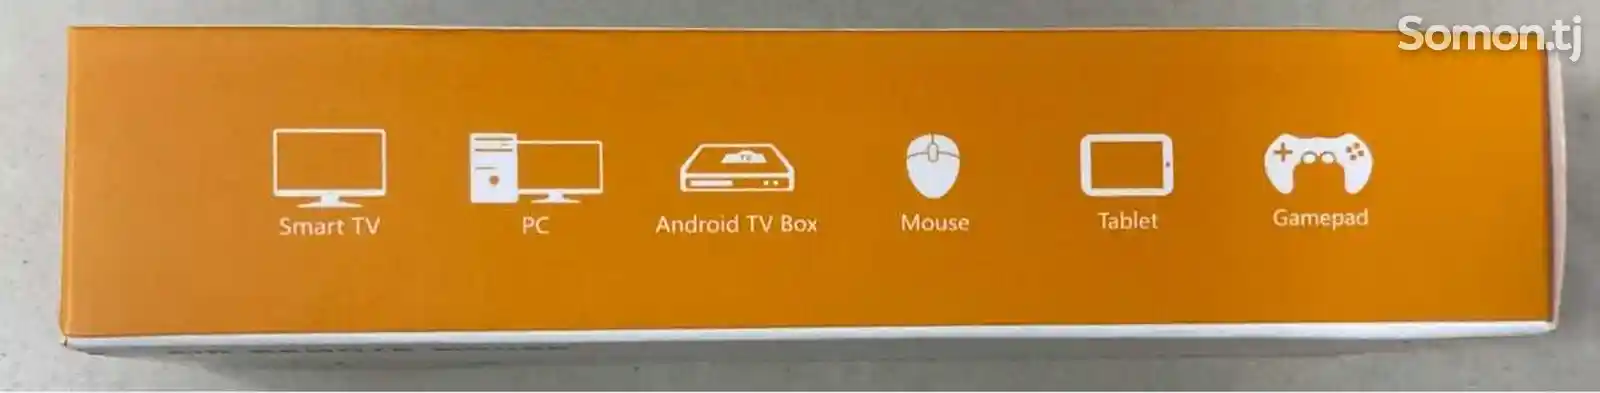 Пульт управления для ПК, Smart TV, Android TV с микрофоном-2